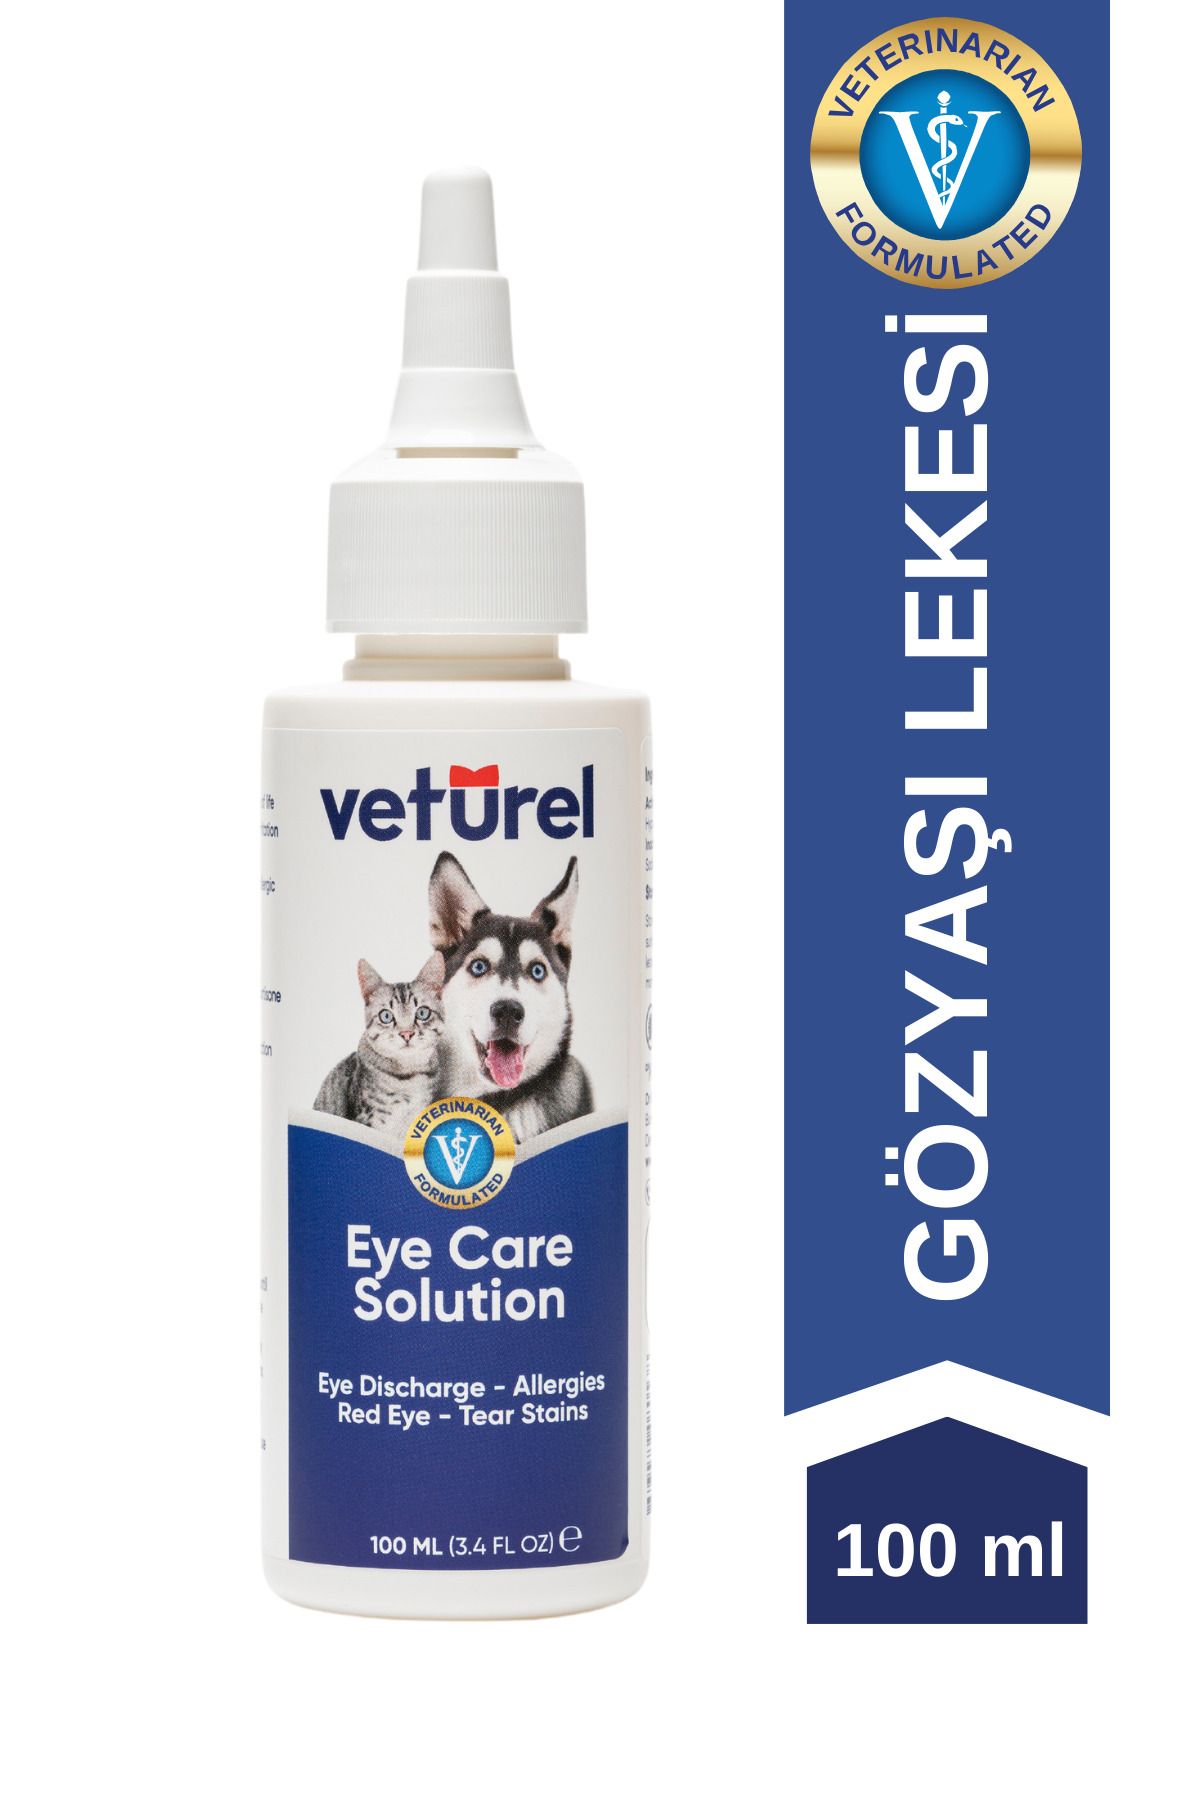 Veturel Kedi Göz Temizleme Solüsyonu Köpek Alerji Kızarıklık Enfeksiyon Gözyaşı Bakımı Göz Damlası 100ml